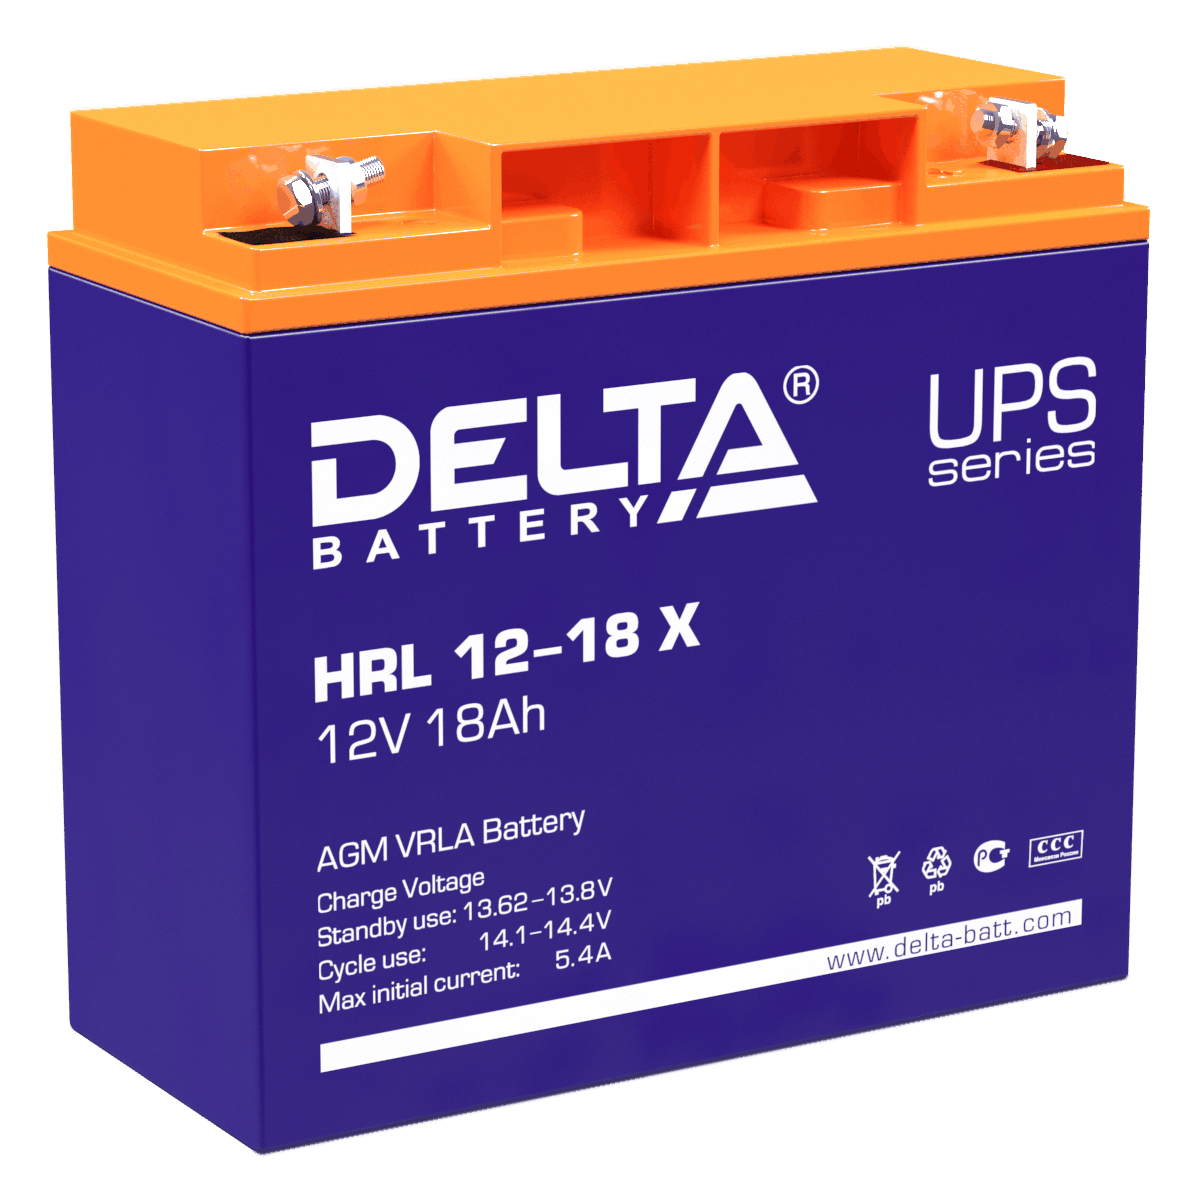 Все Батареи DELTA HRL 12-18 X видеонаблюдения в магазине Vidos Group